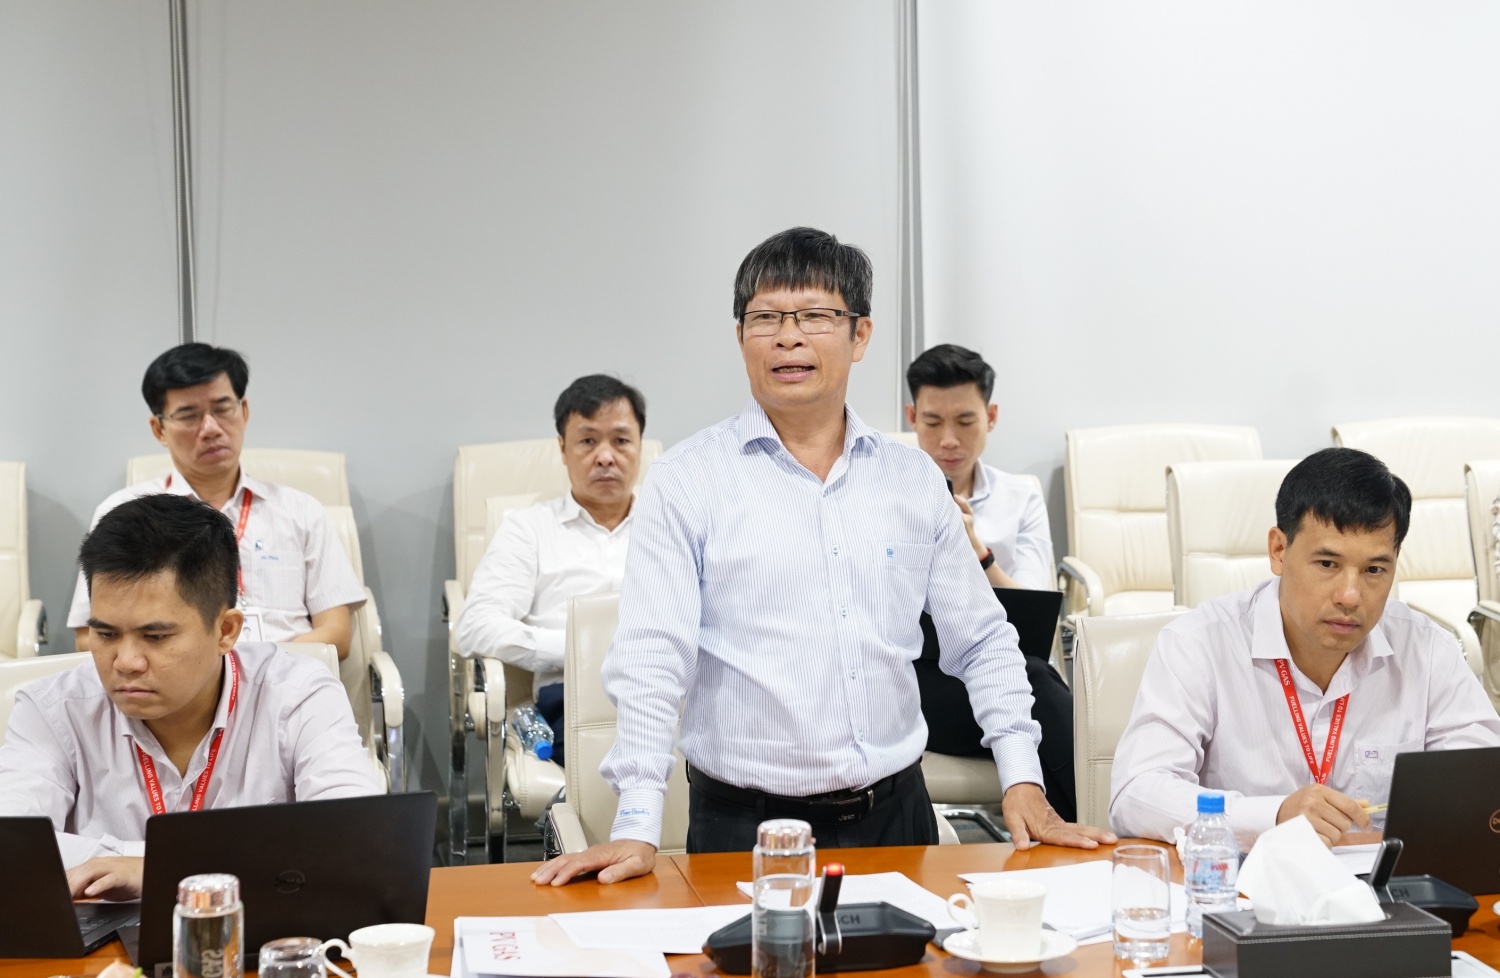 Đồng chí Nguyễn Sỹ Quyết Tâm, Phó Bí thư Chi bộ, thay mặt Chi ủy trình bày dự thảo chuyên đề 